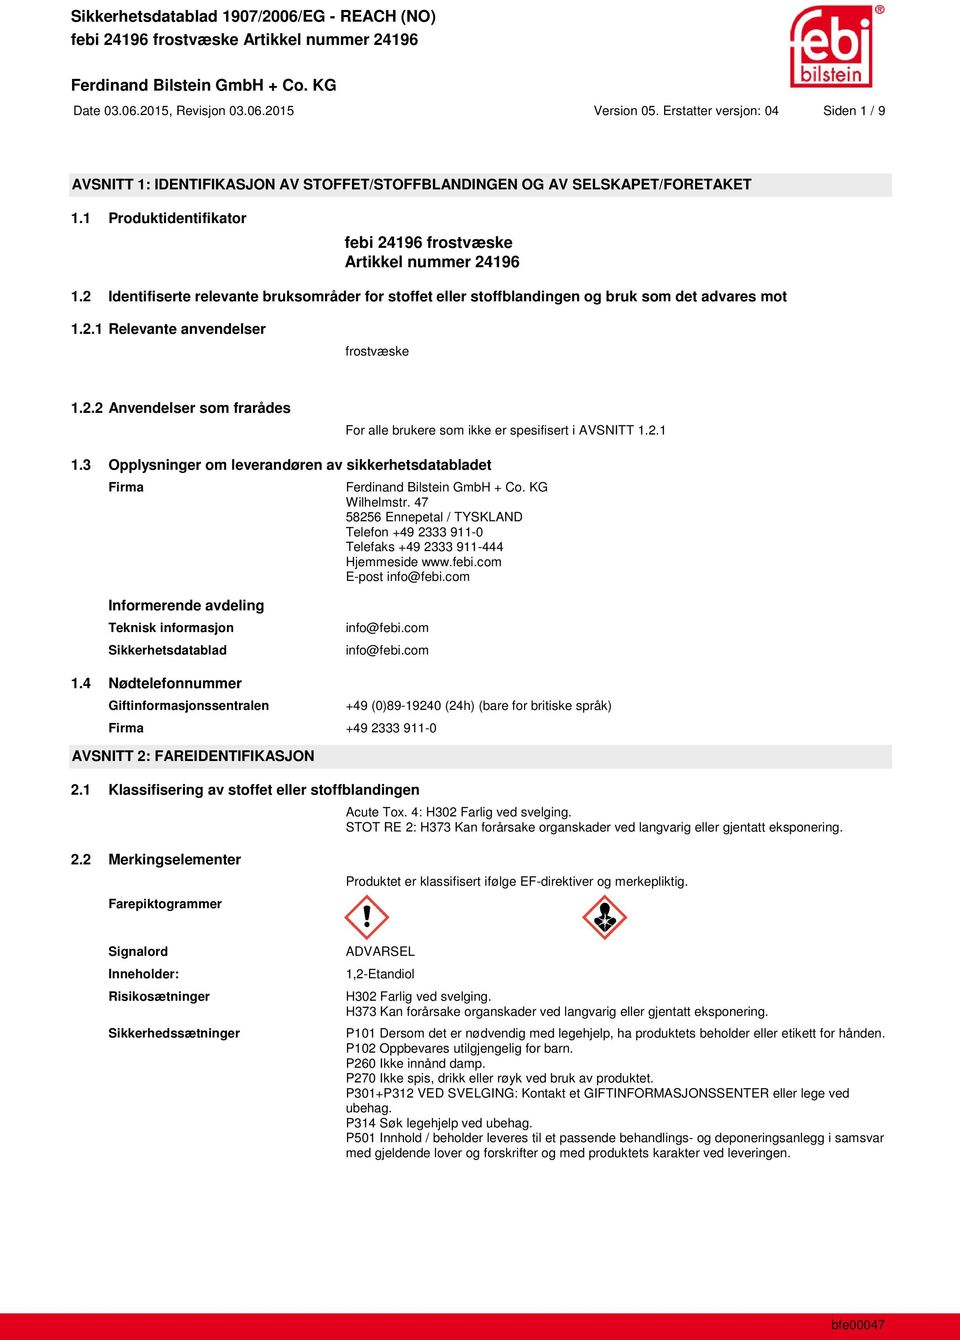 2.2 Anvendelser som frarådes For alle brukere som ikke er spesifisert i AVSNITT 1.2.1 1.3 Opplysninger om leverandøren av sikkerhetsdatabladet Firma Wilhelmstr.